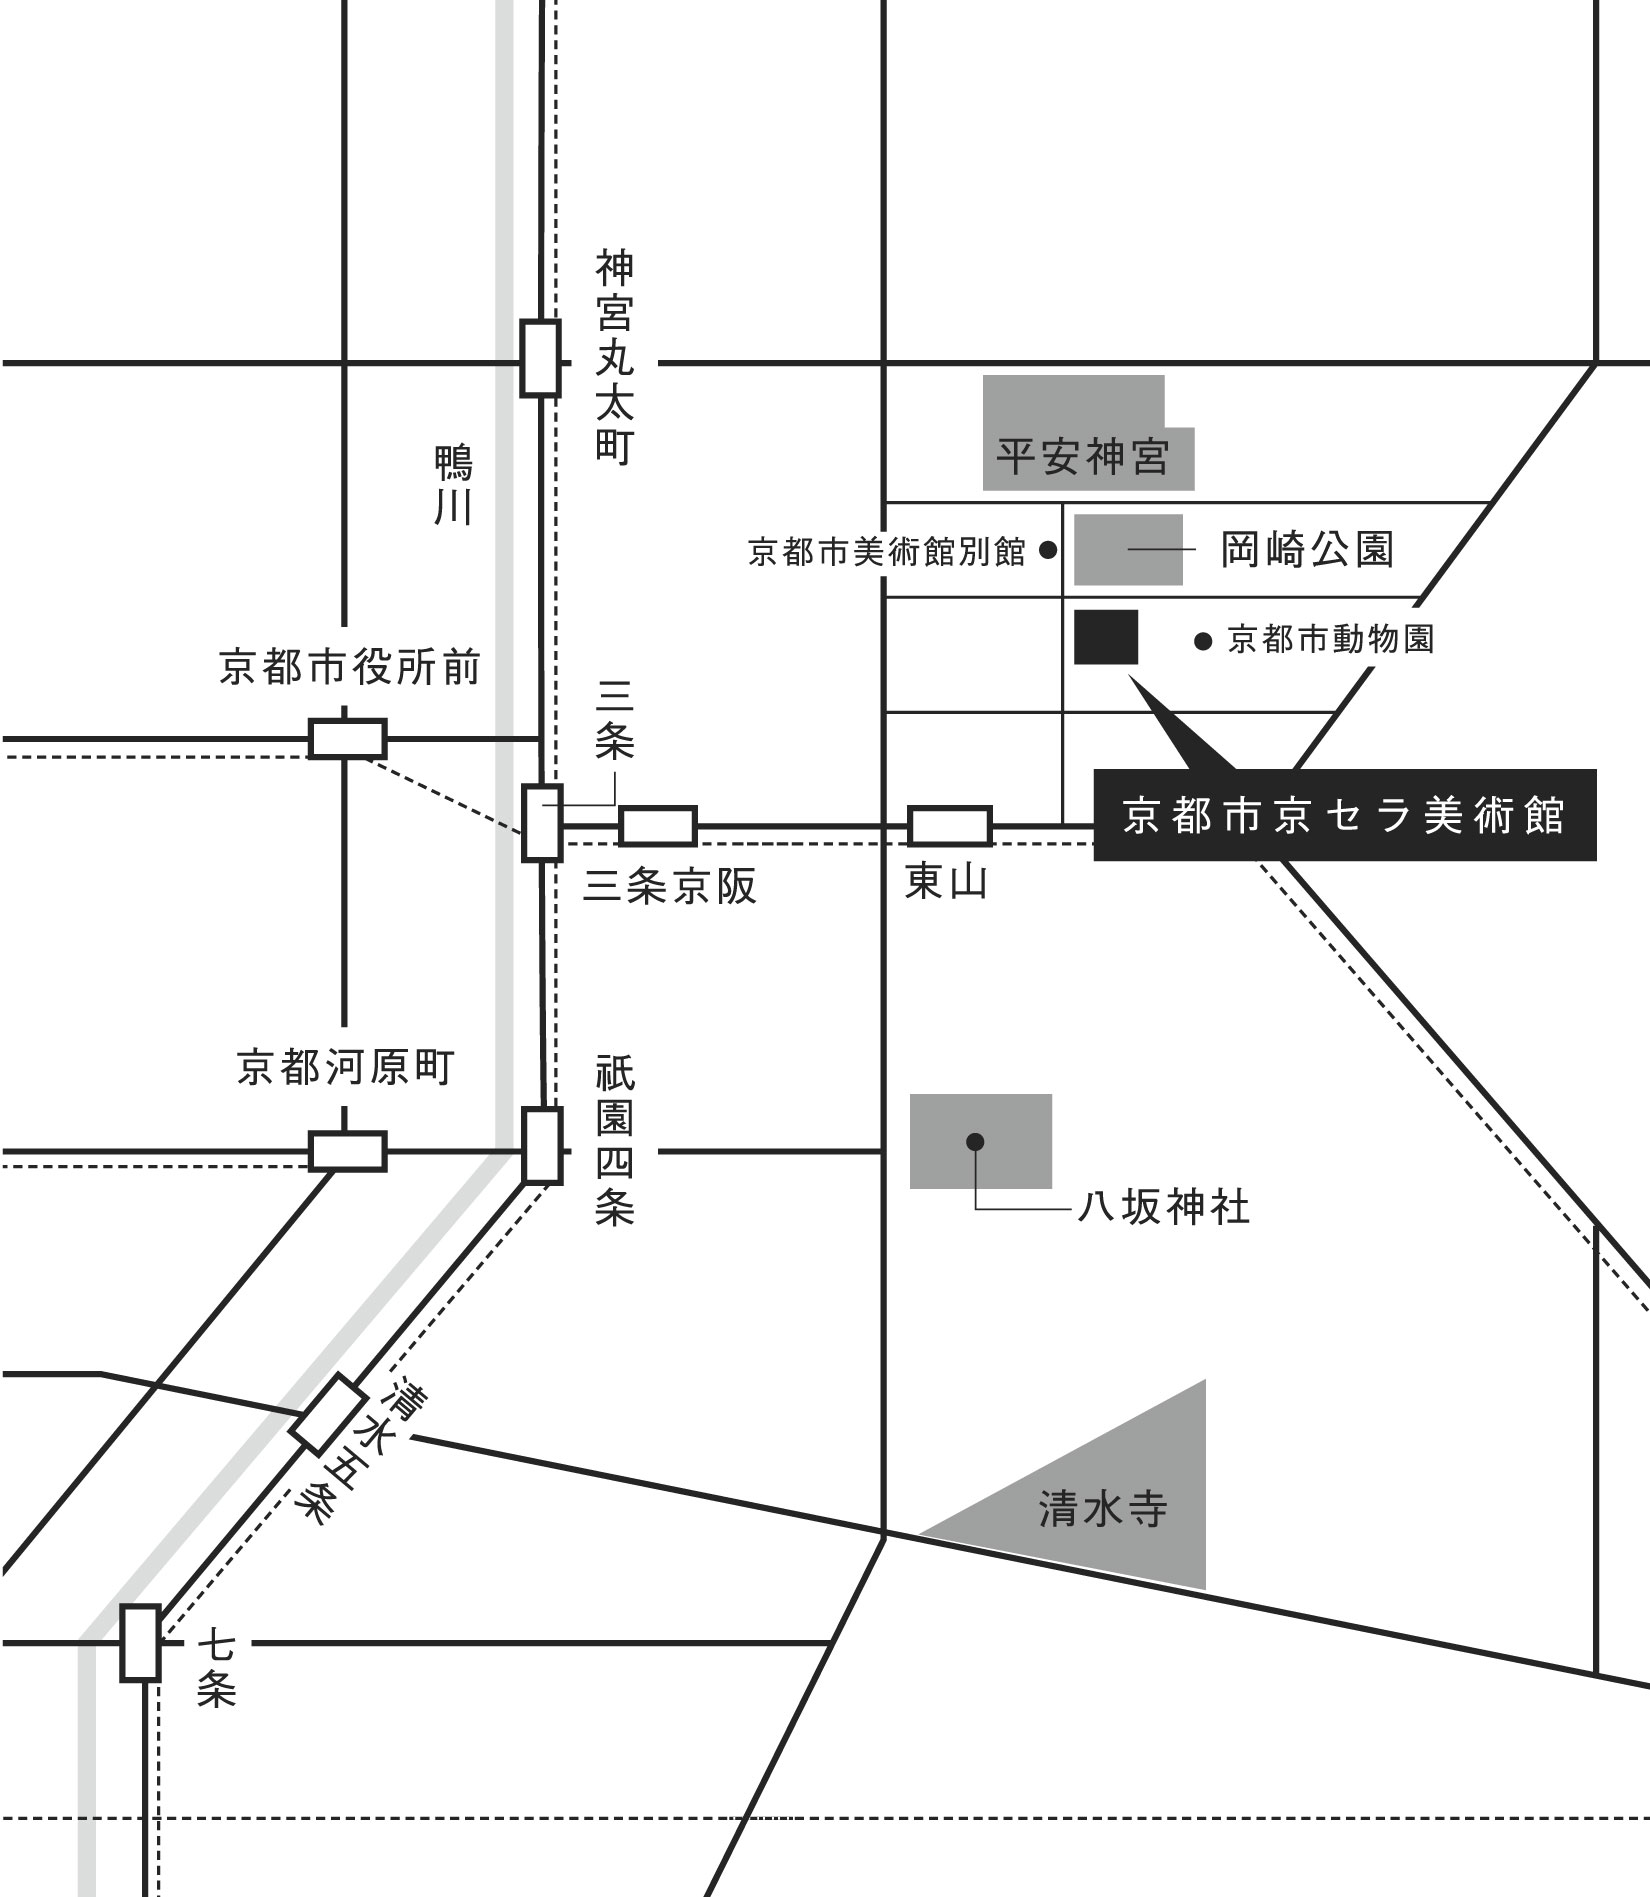 交通アクセス 京都市京セラ美術館 公式ウェブサイト